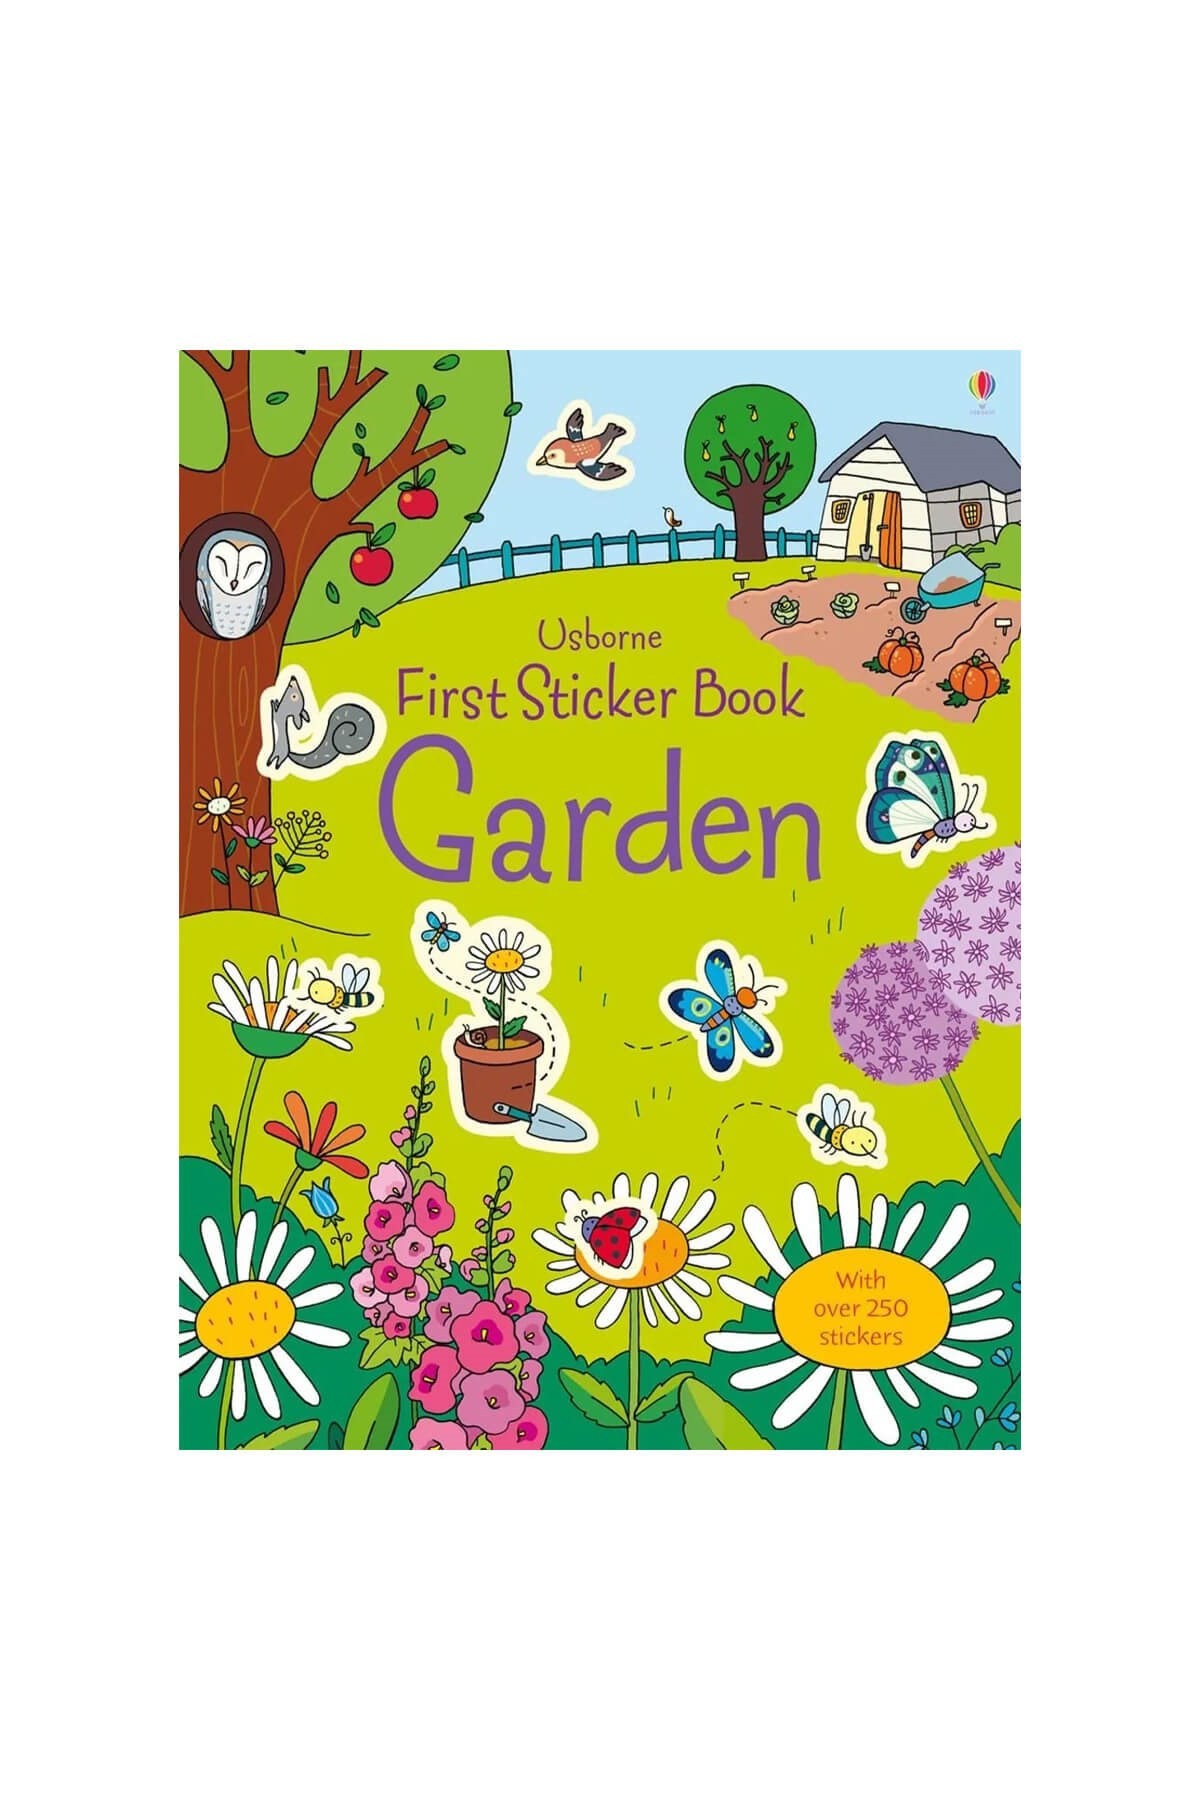 The Usborne First Sticker Book Garden